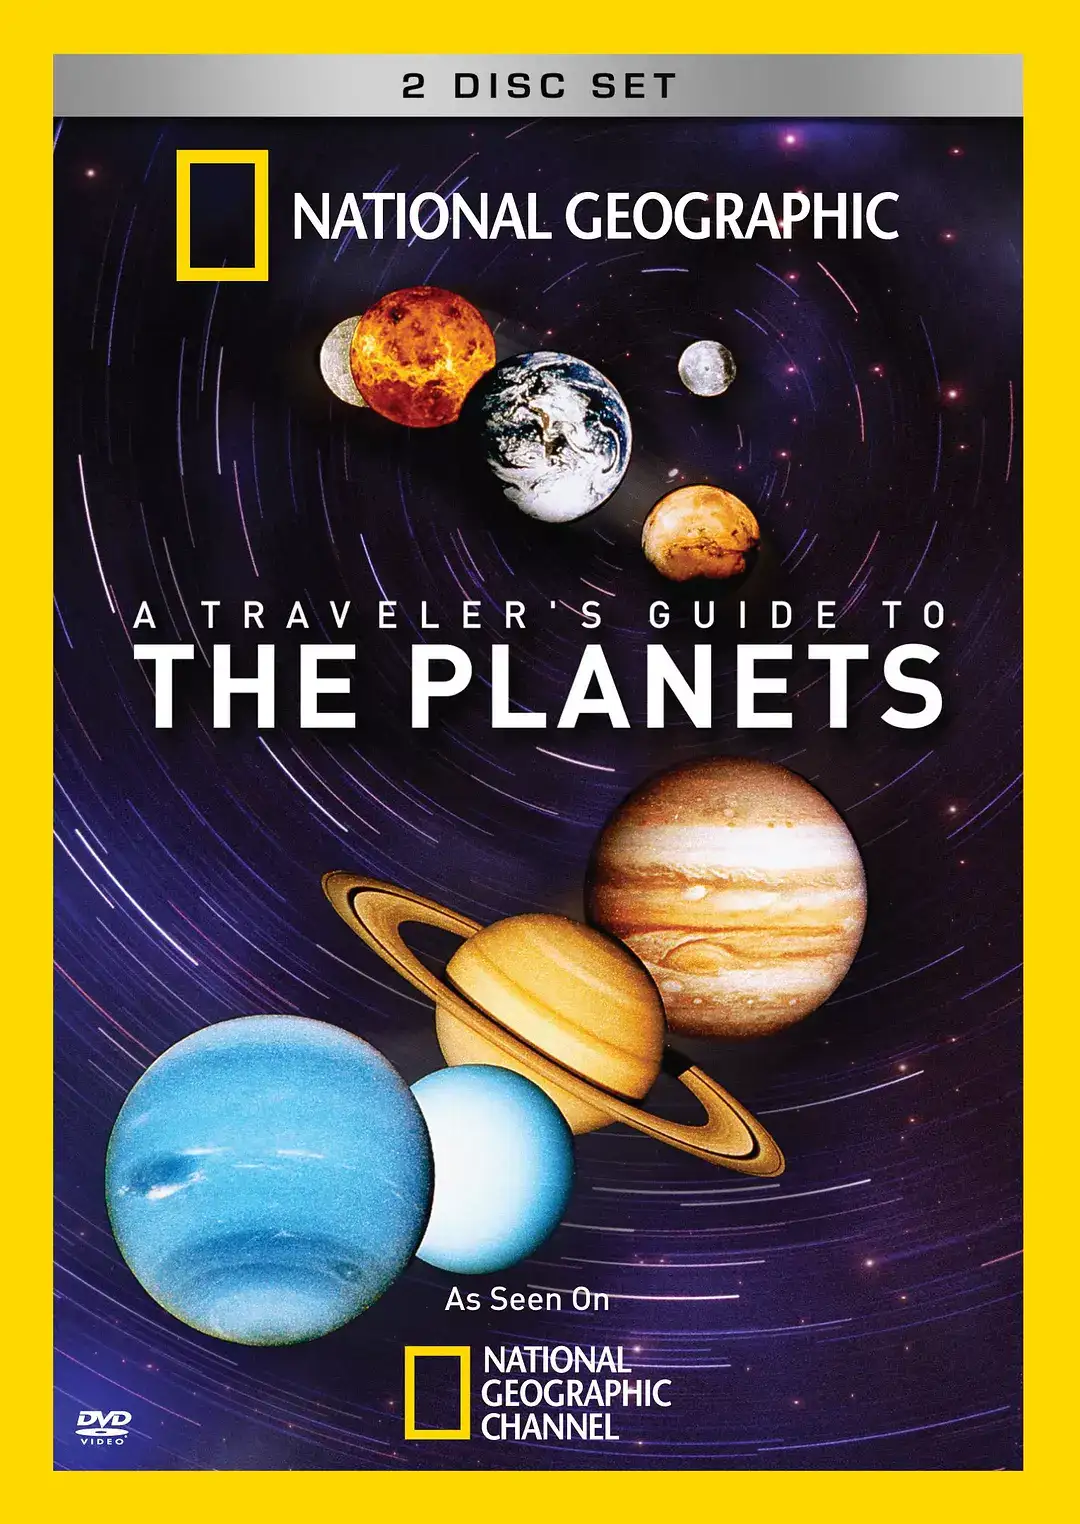 国家地理纪录片《行星旅行指南 / A Traveler's Guide To The Planets》全集-高清完整版网盘迅雷下载